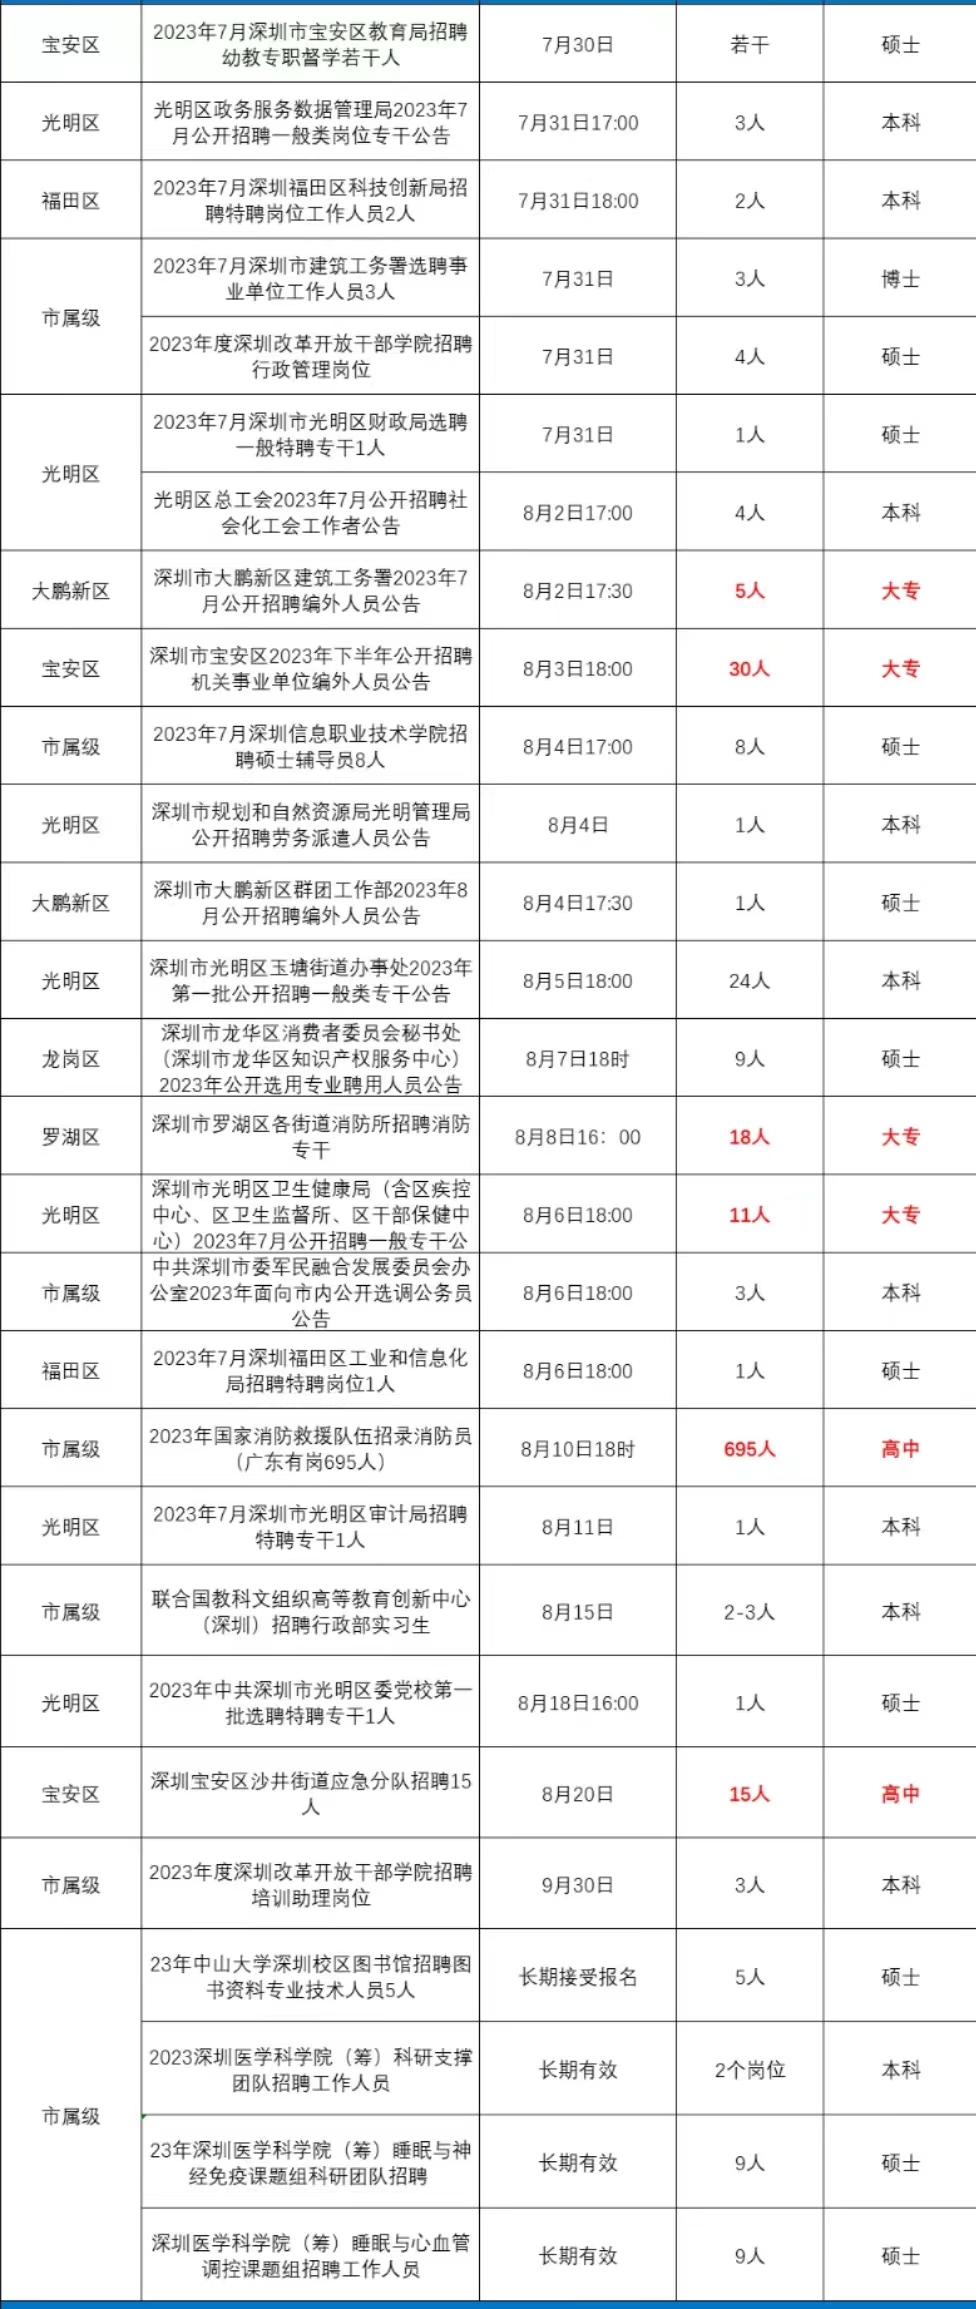 2023年下半年深圳市政府机关、事业单位招聘信息汇总